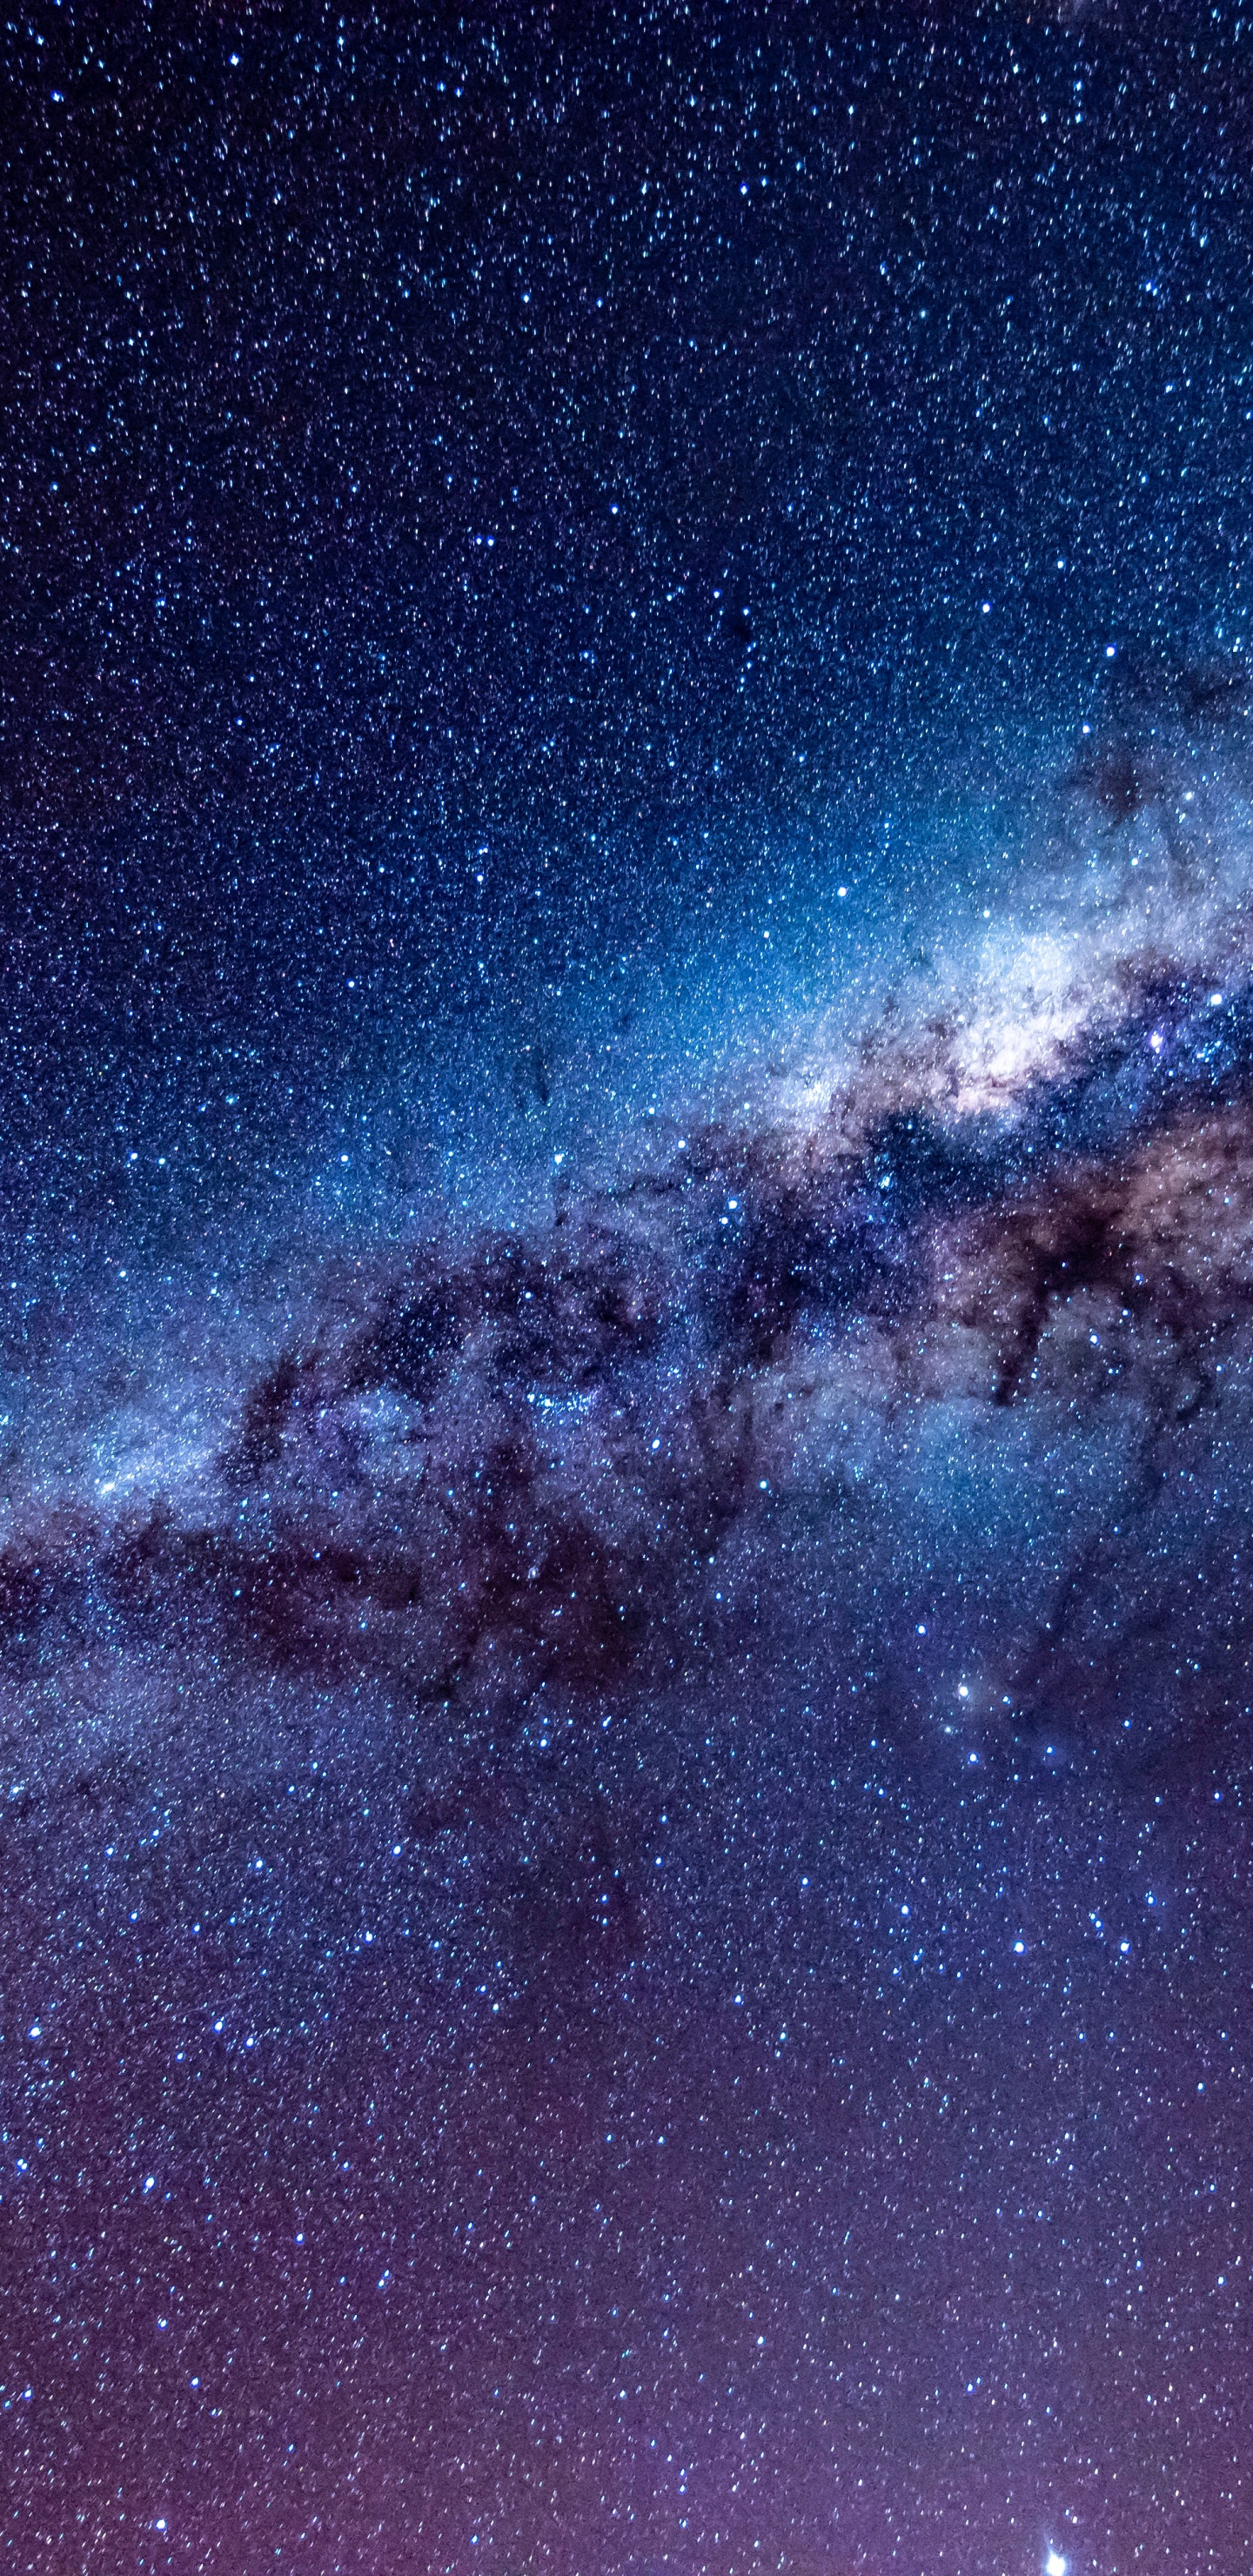 银河系, 天文学, 宇宙, 明星, 夜晚的天空 壁纸 1440x2960 允许